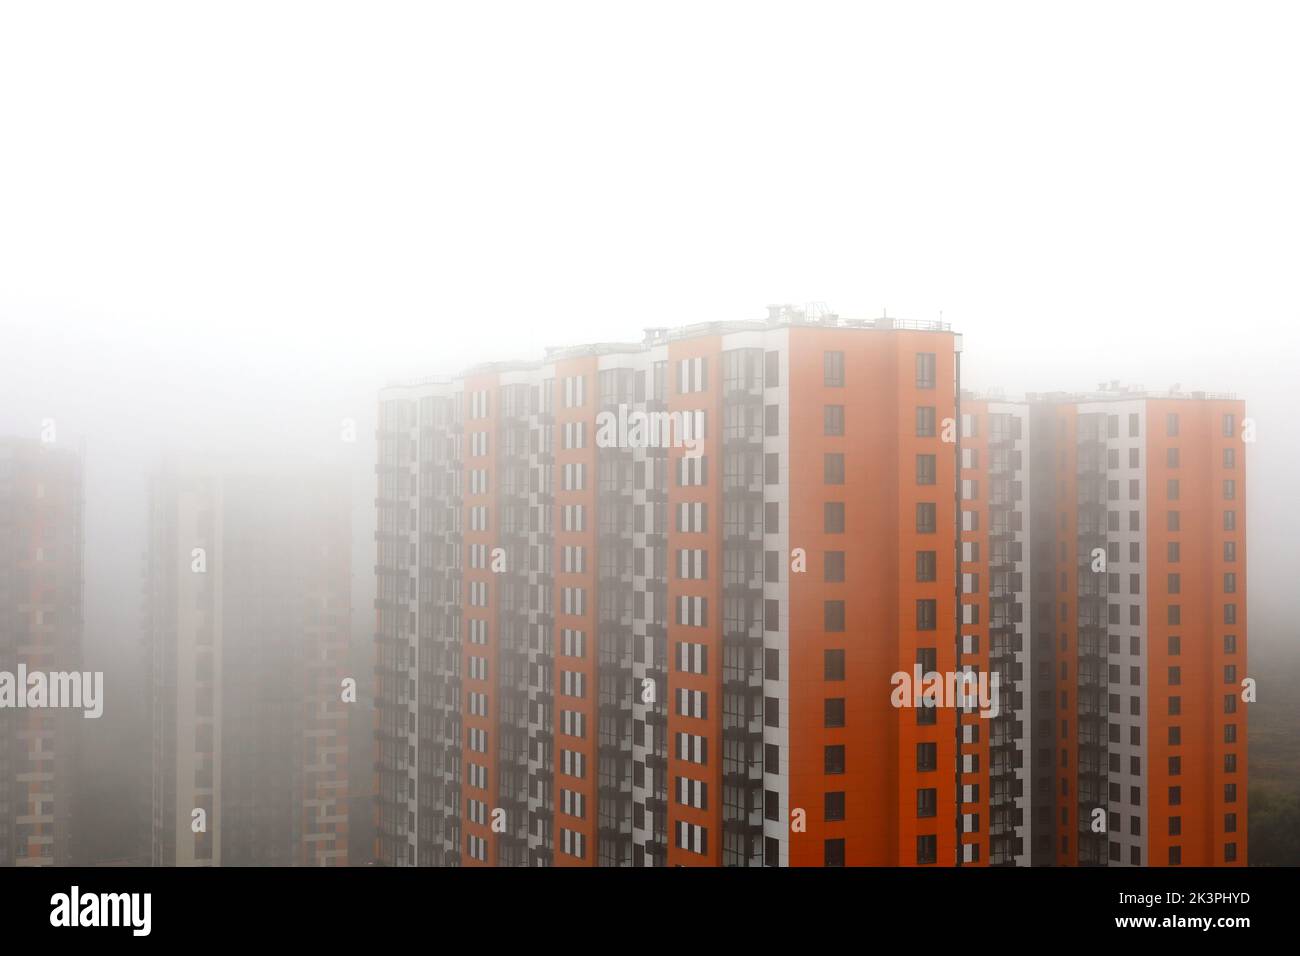 Nebbia in una città, nuovi edifici residenziali con rivestimento arancione e giallo nella nebbia. Sviluppo di case, costruzione di alti piani in zona umida Foto Stock